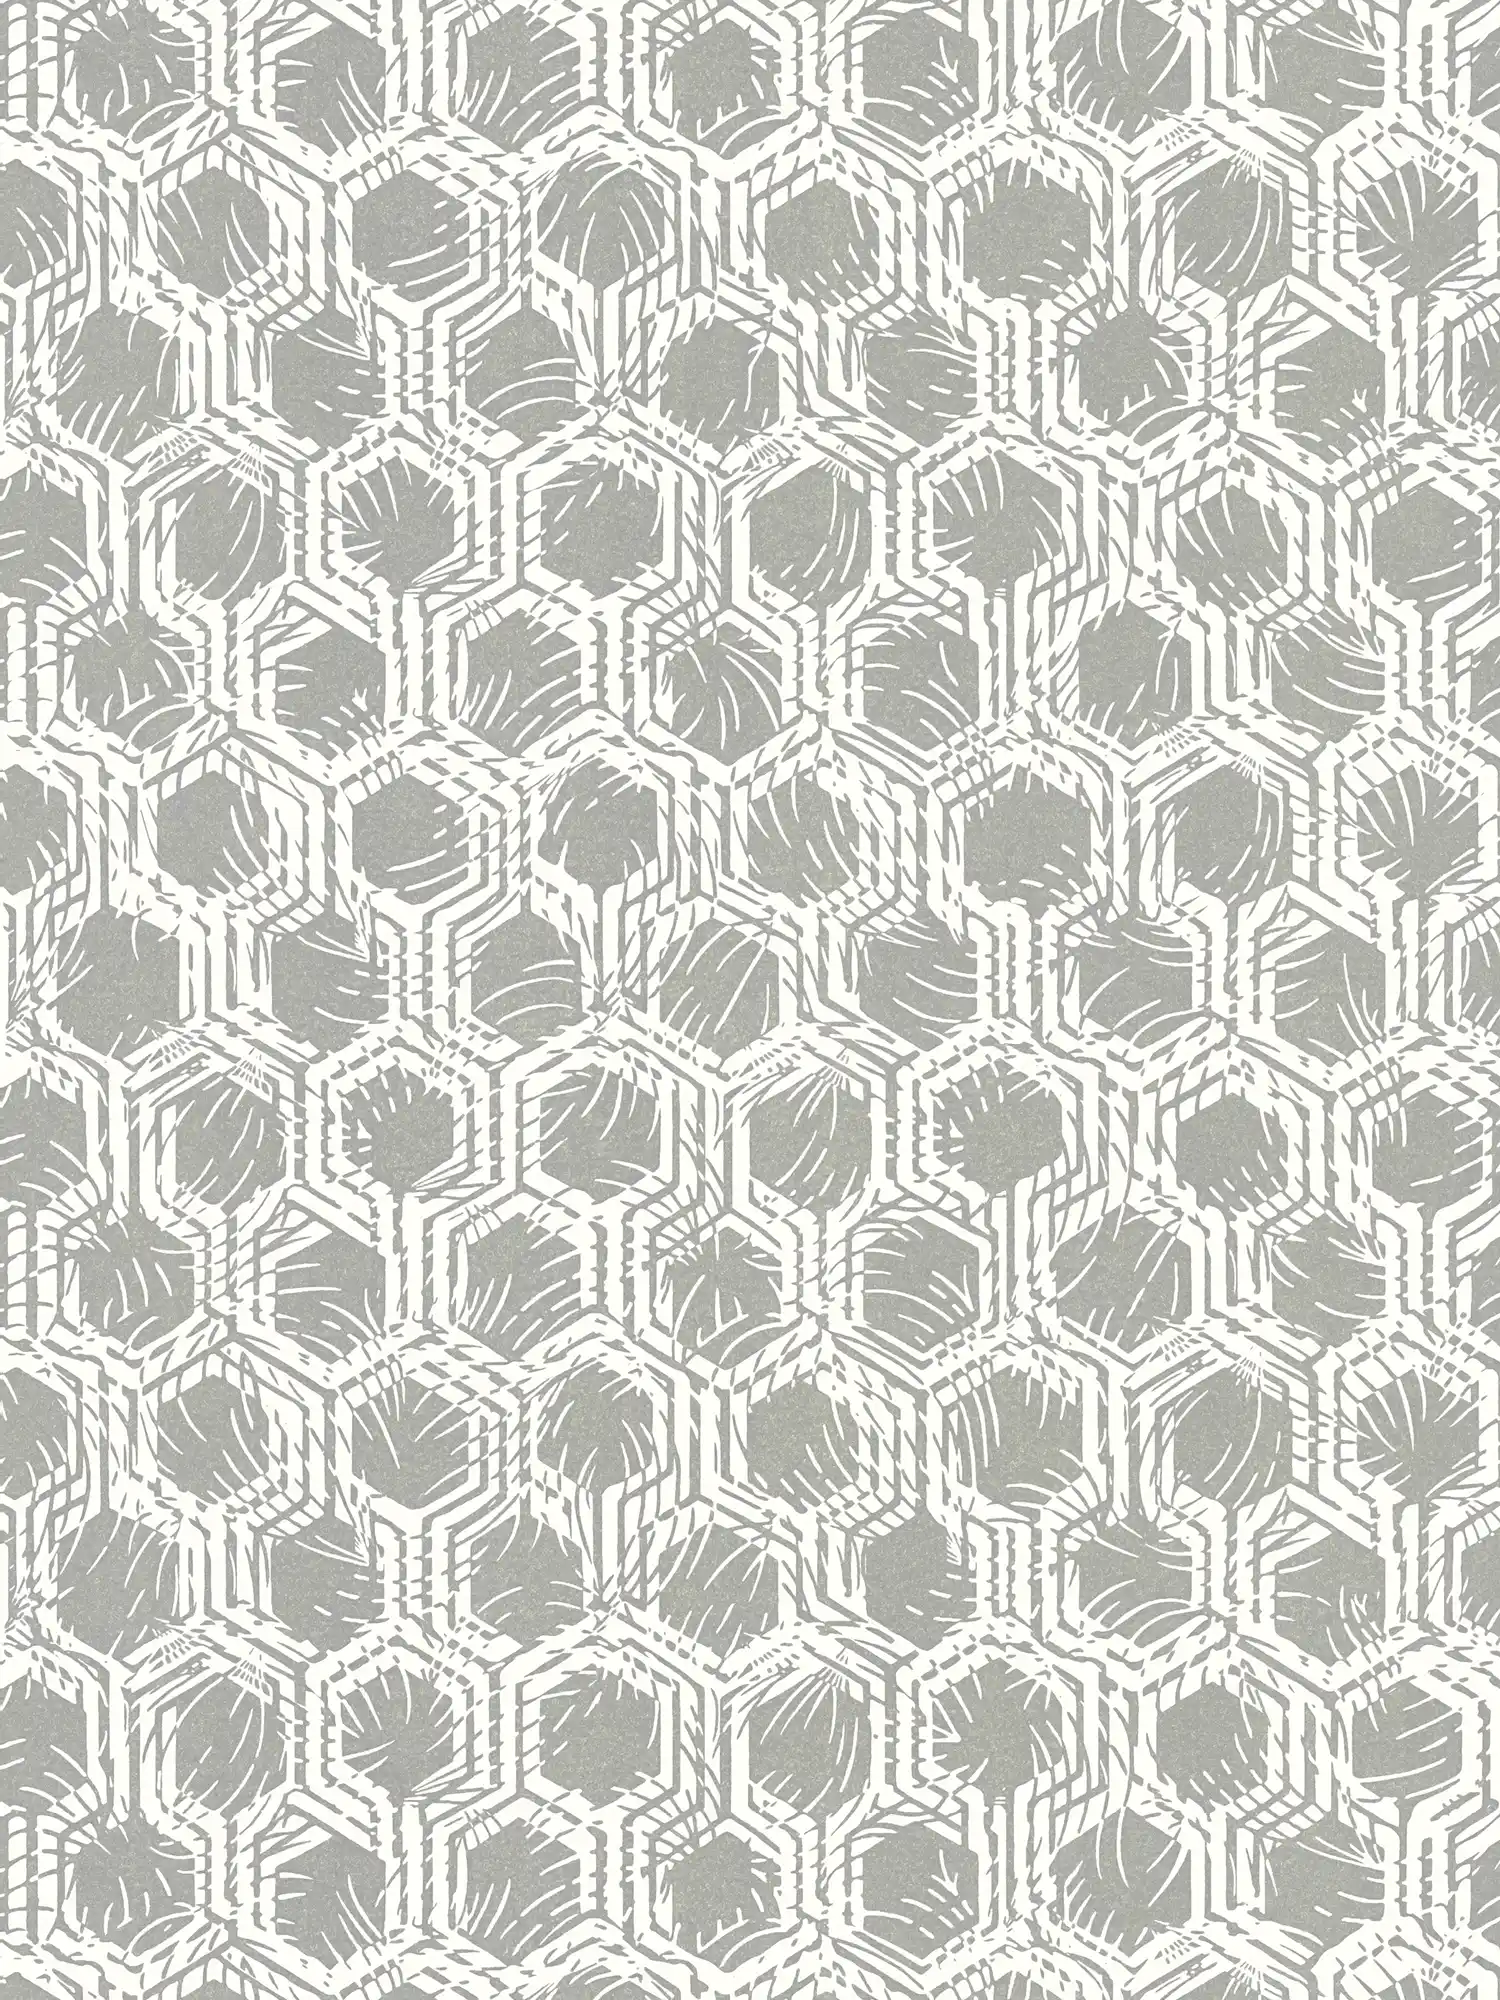         Geometrische Mustertapete mit Metallic-Farben – Silber, Weiß
    